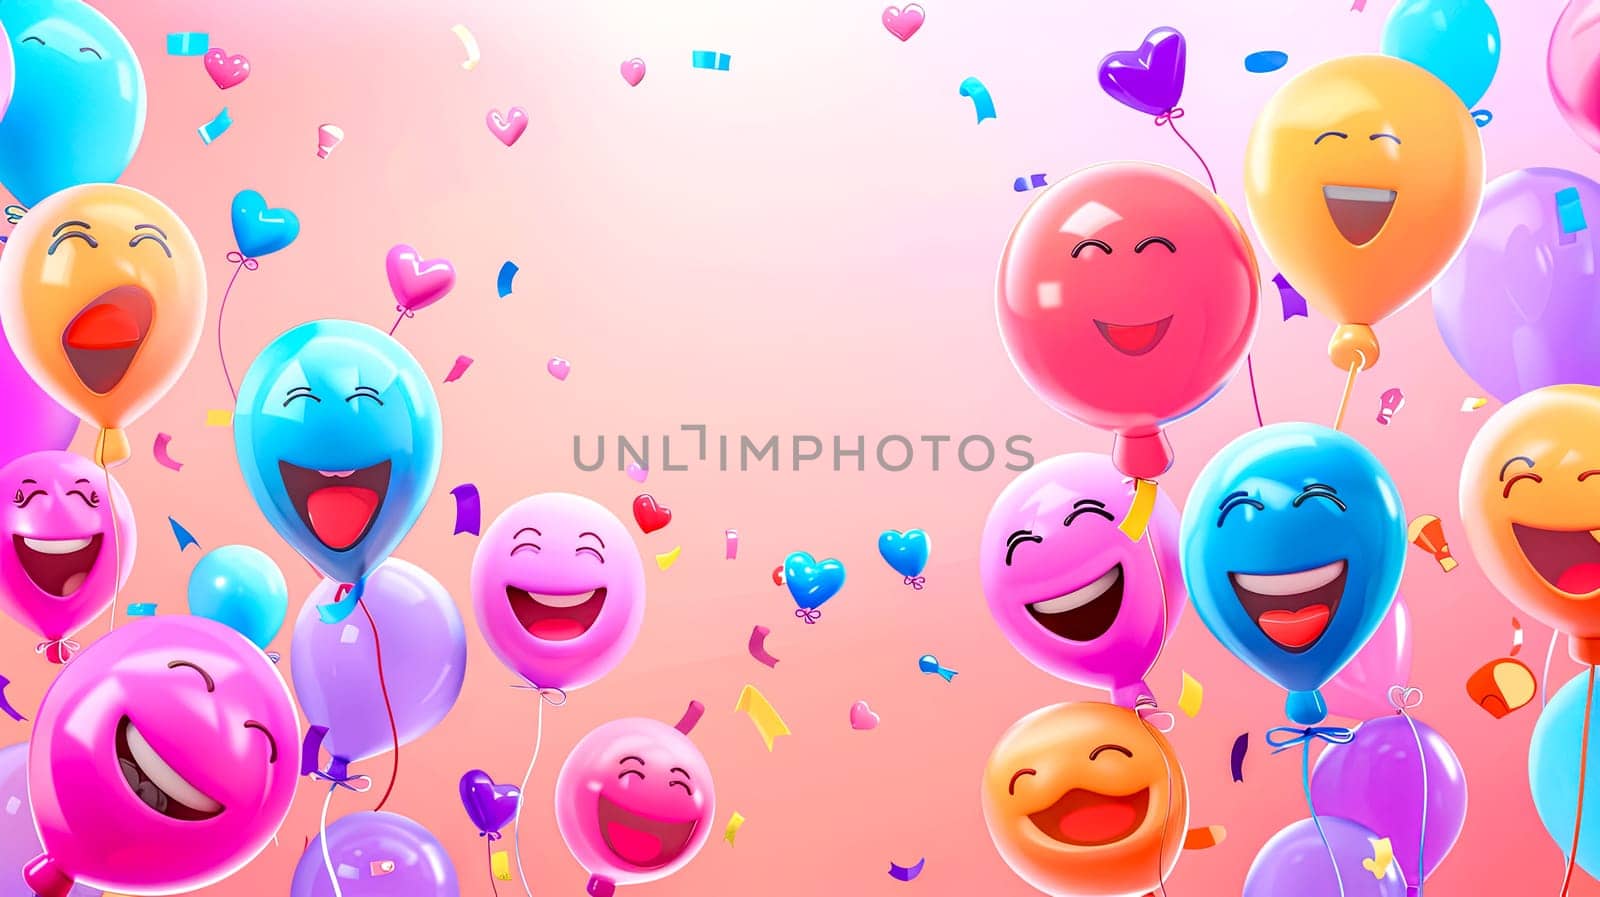 Joyful emoticon balloons celebration background by Edophoto